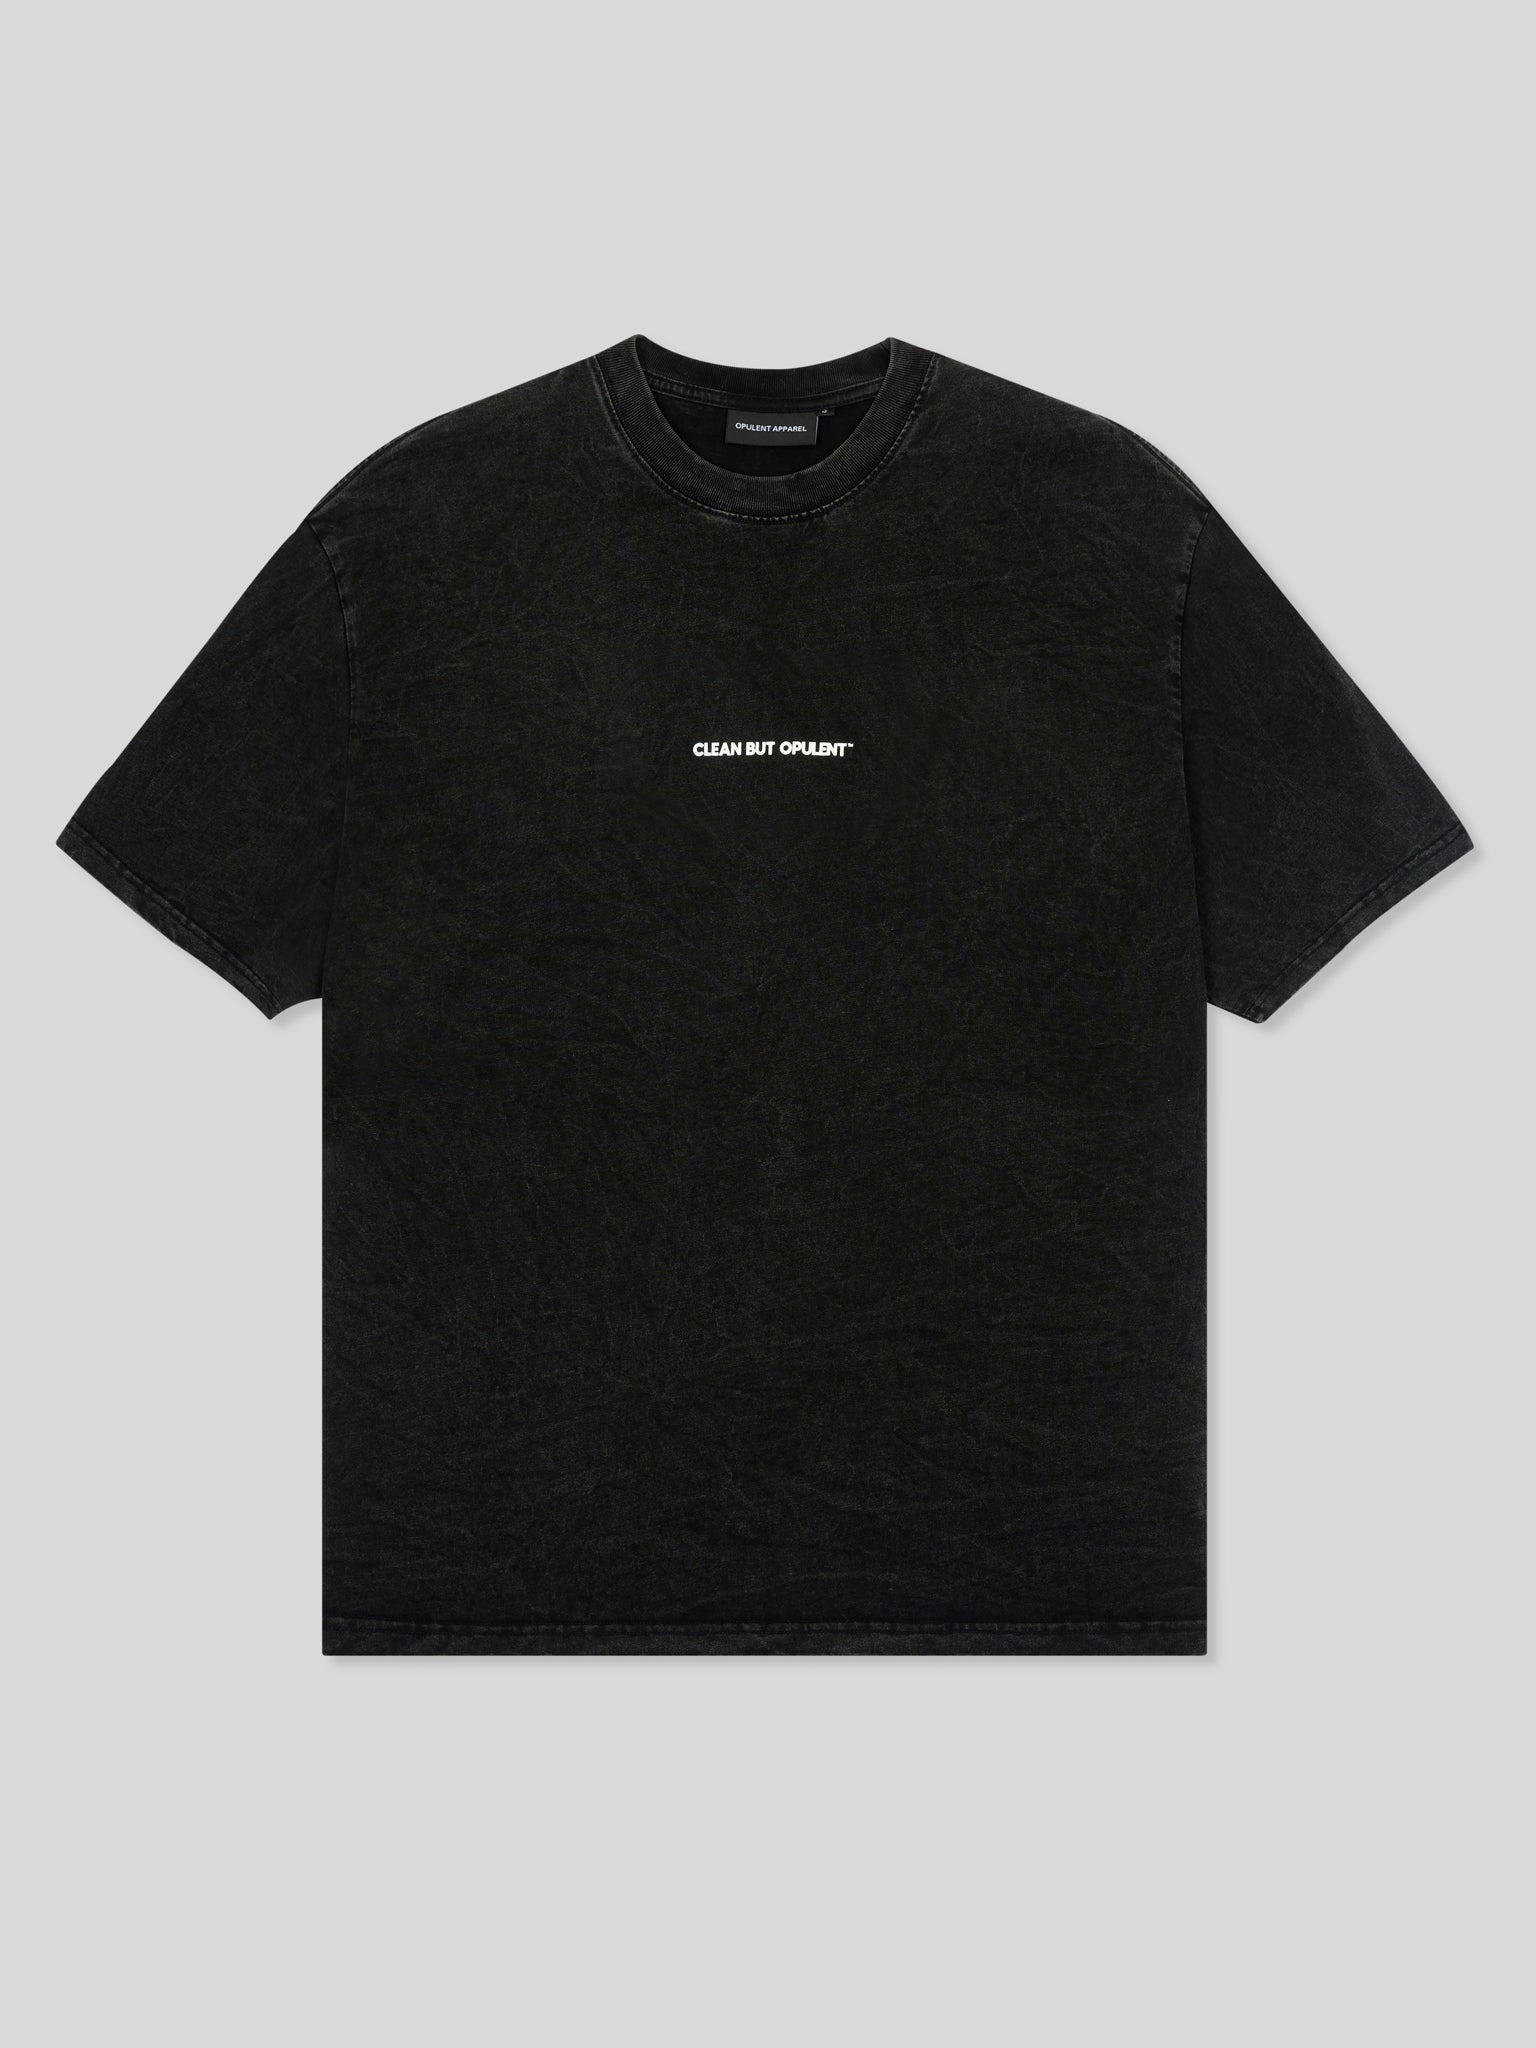 CBO Vintage Washed T-Shirt - Black opulentappareluk